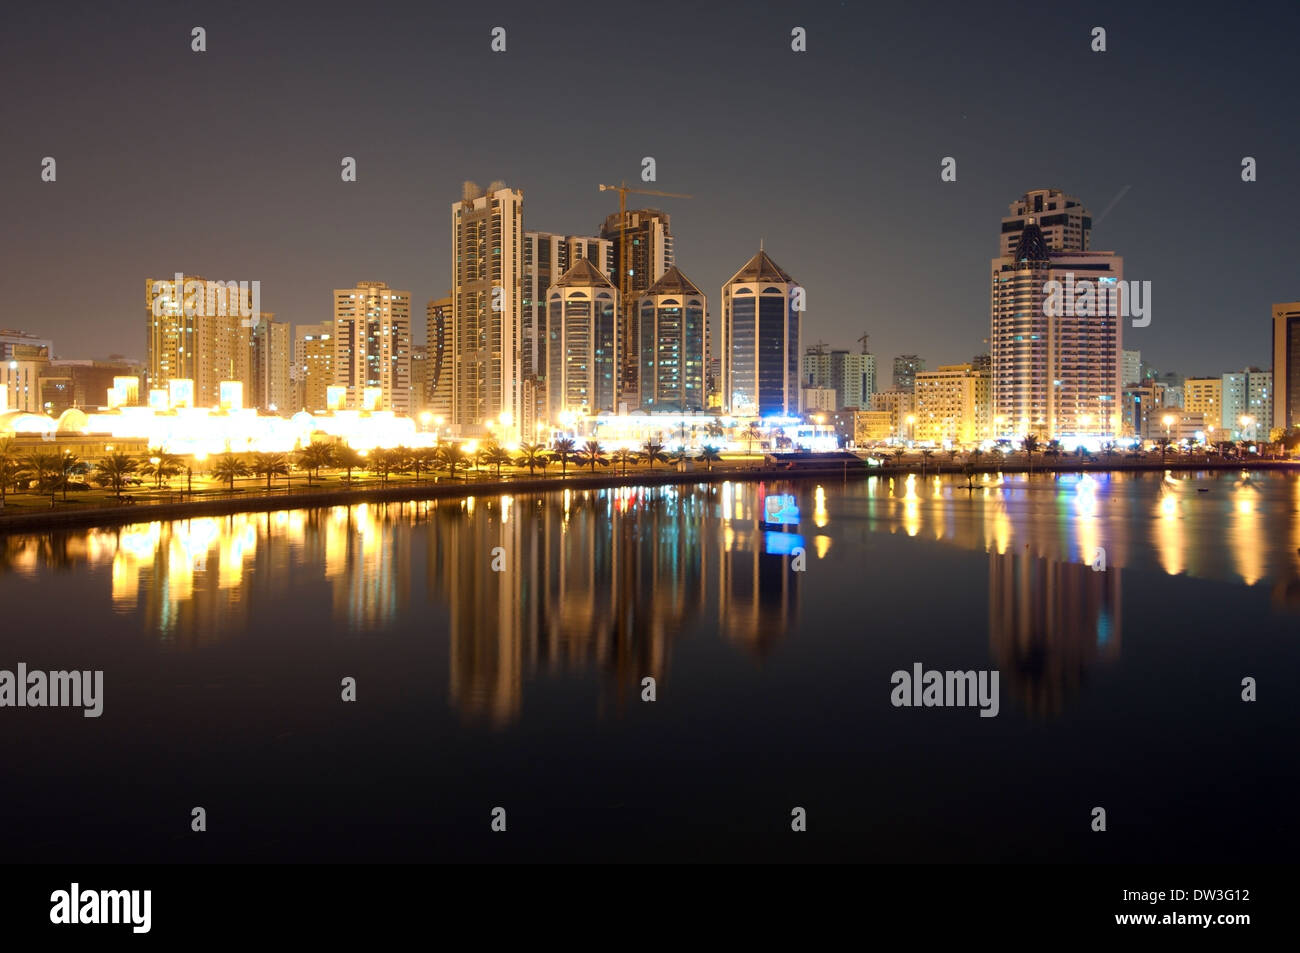 La noche de la ciudad de Sharjah, Emirato de Sharjah (Emiratos Árabes Unidos), Foto de stock